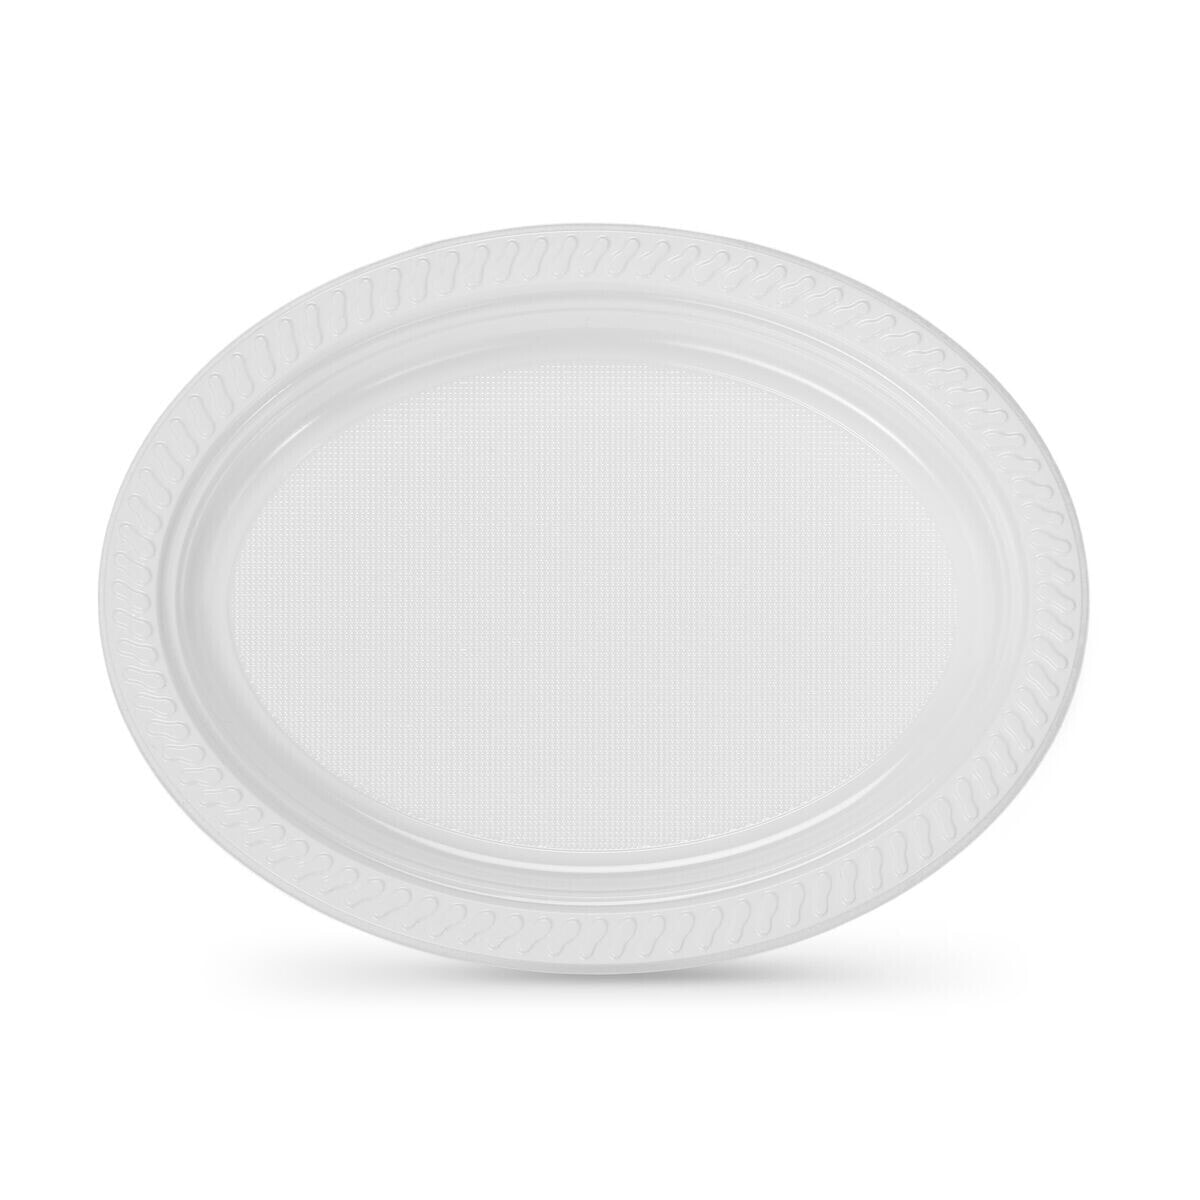 Set of reusable plates Algon White 27 x 21 cm Plastic Oval 6 Units